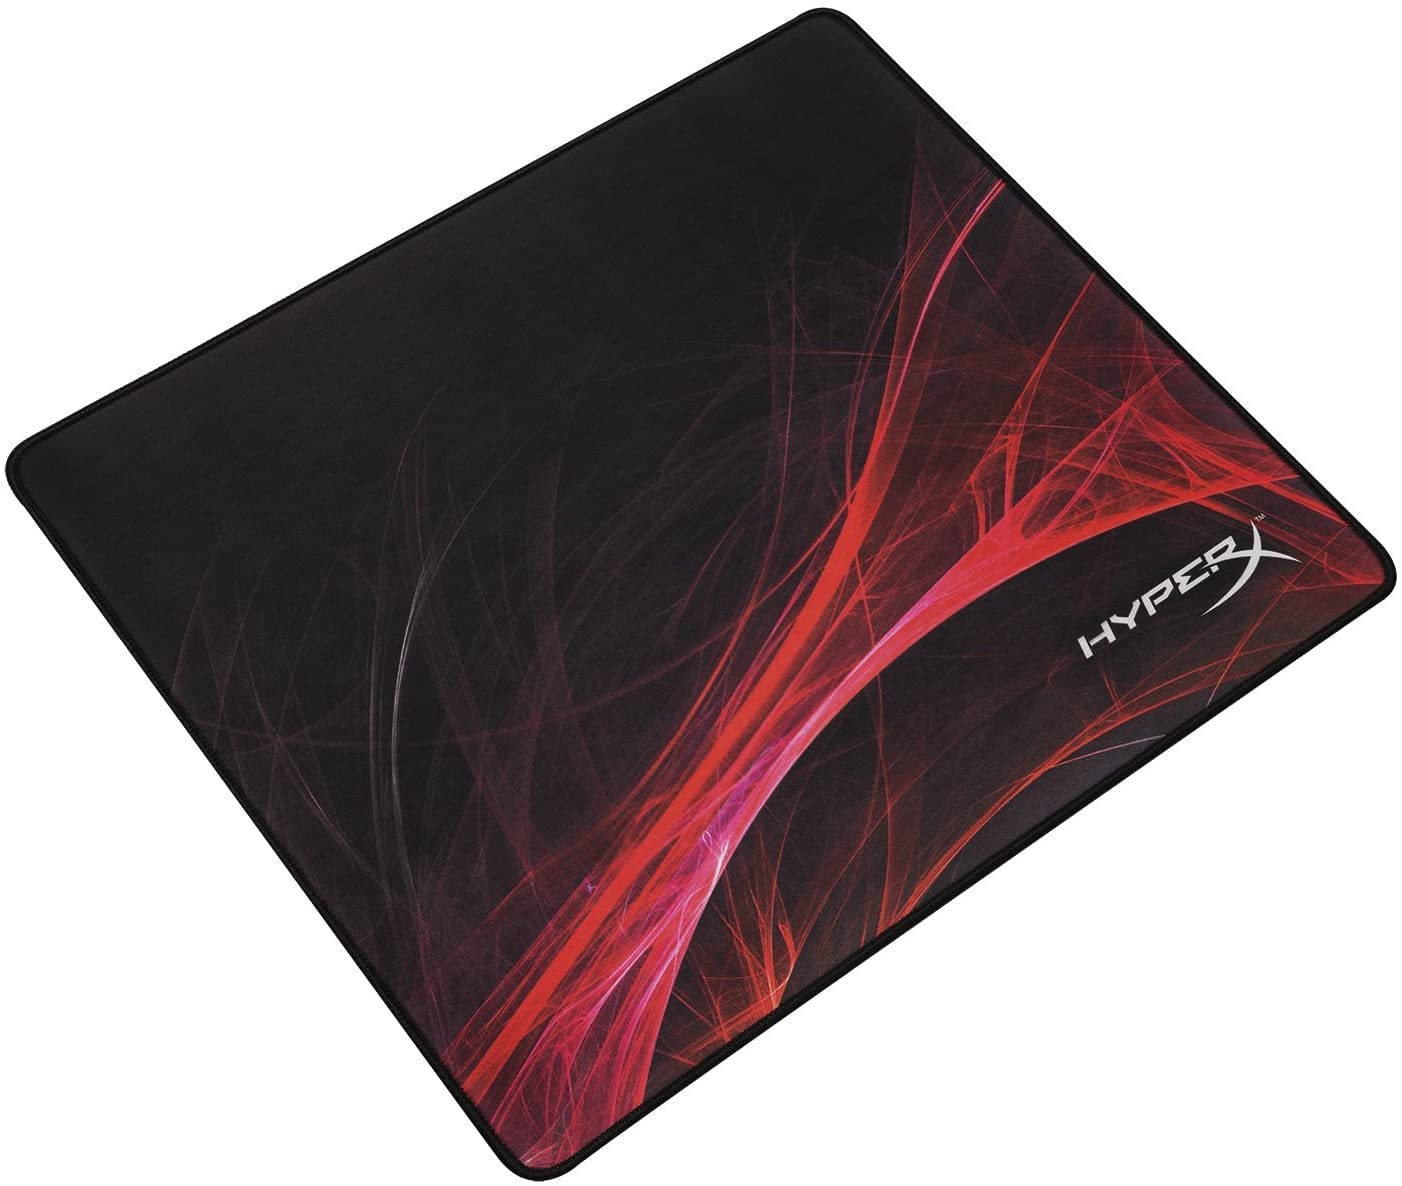 HyperX FURY S Speed MousePad L HX-MPFS-S-L